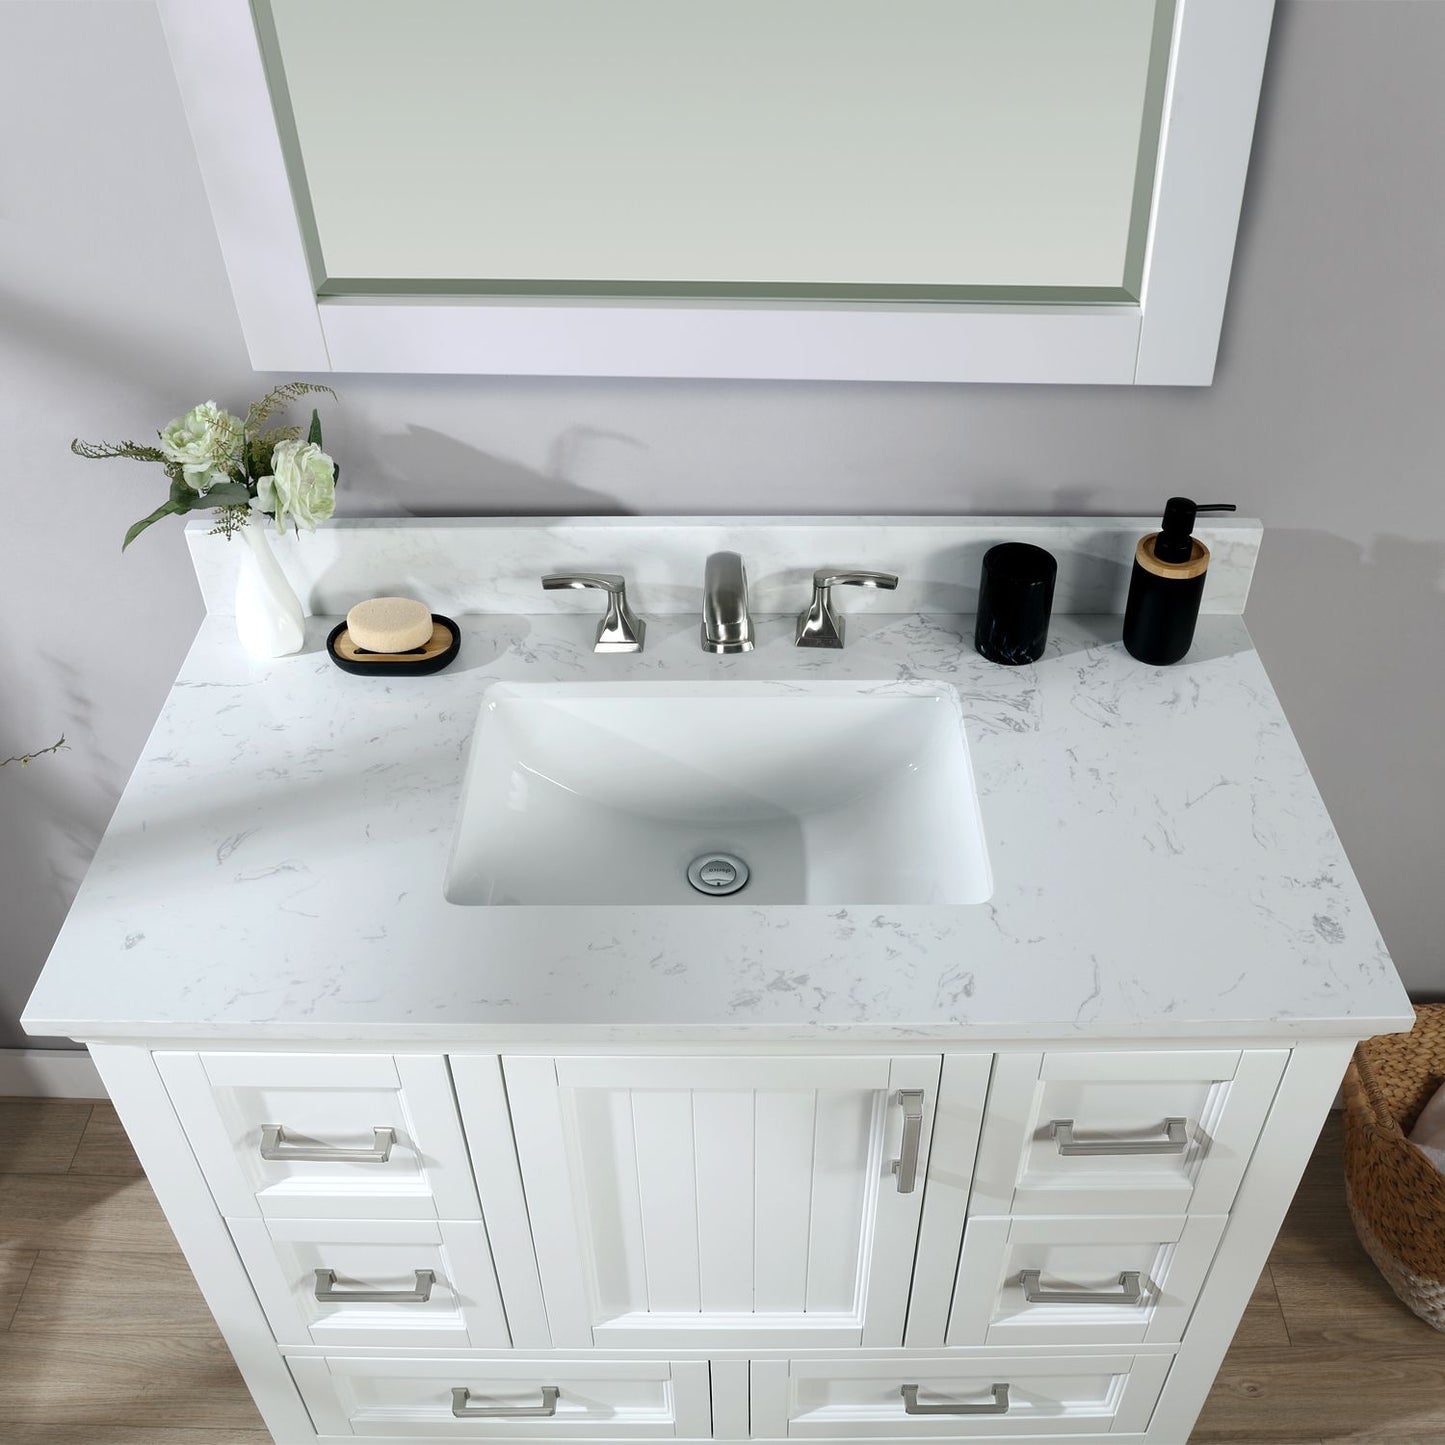 Altair Isla 42" Single Bathroom Vanity Set Countertop with Mirror - Luxe Bathroom Vanities